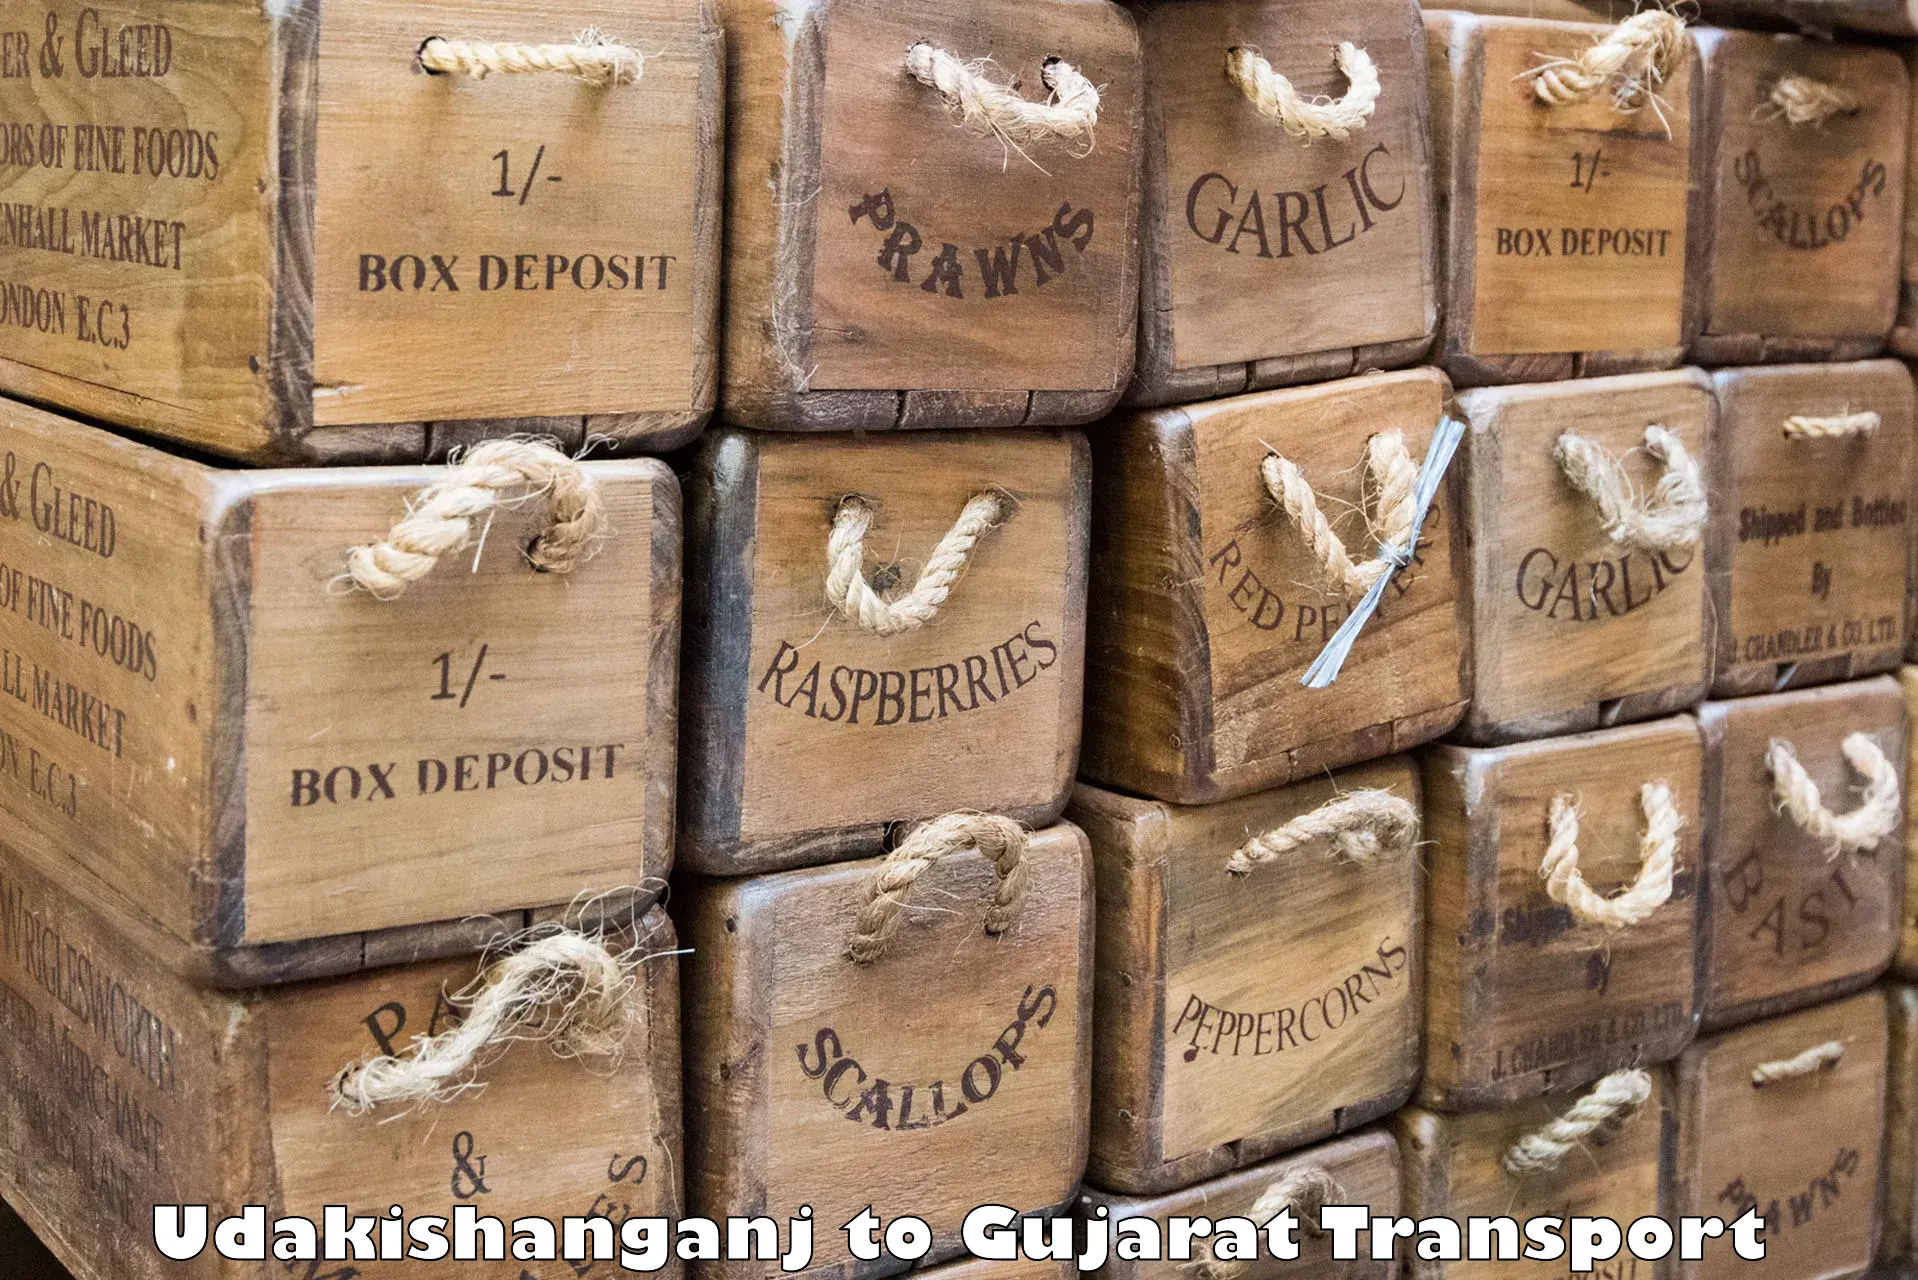 Cargo transportation services Udakishanganj to Ahmedabad